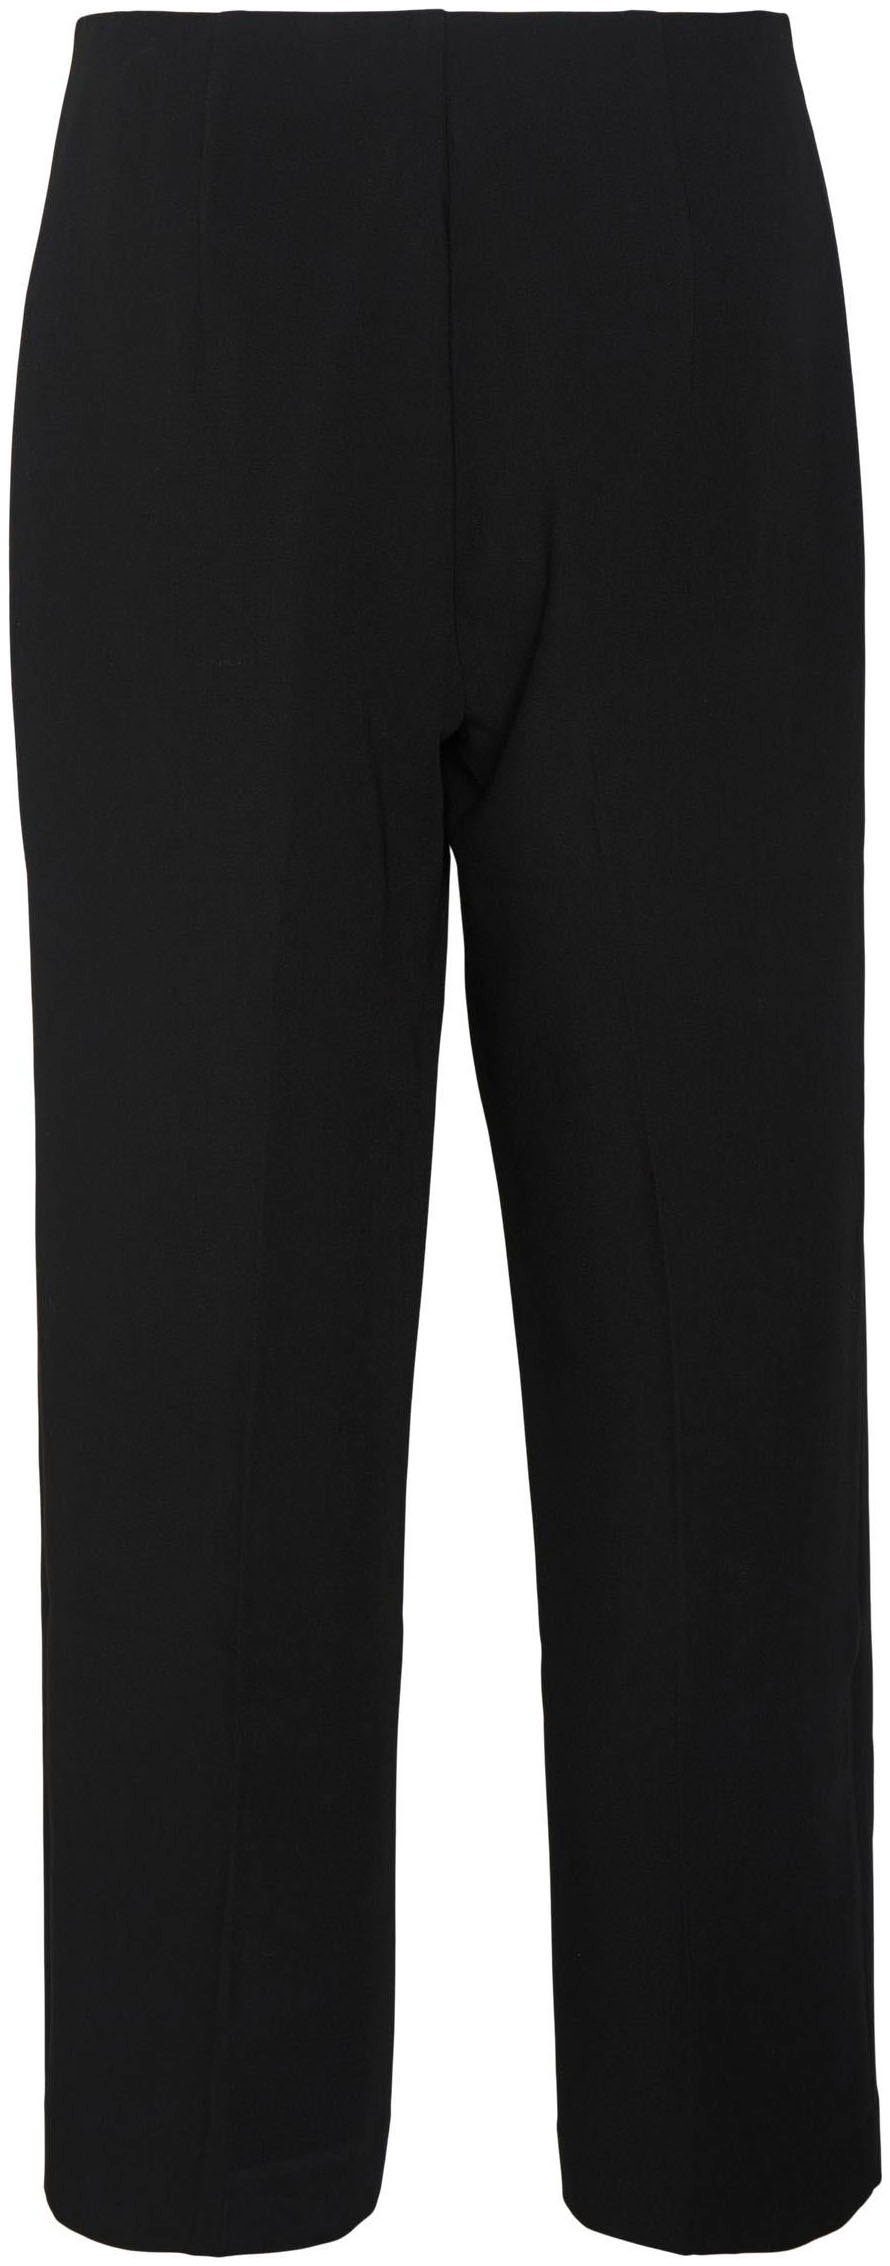 PANT STRAIGHT NOOS Moda ANKLE Anzughose VMSANDY mit Stretch Black HW Vero